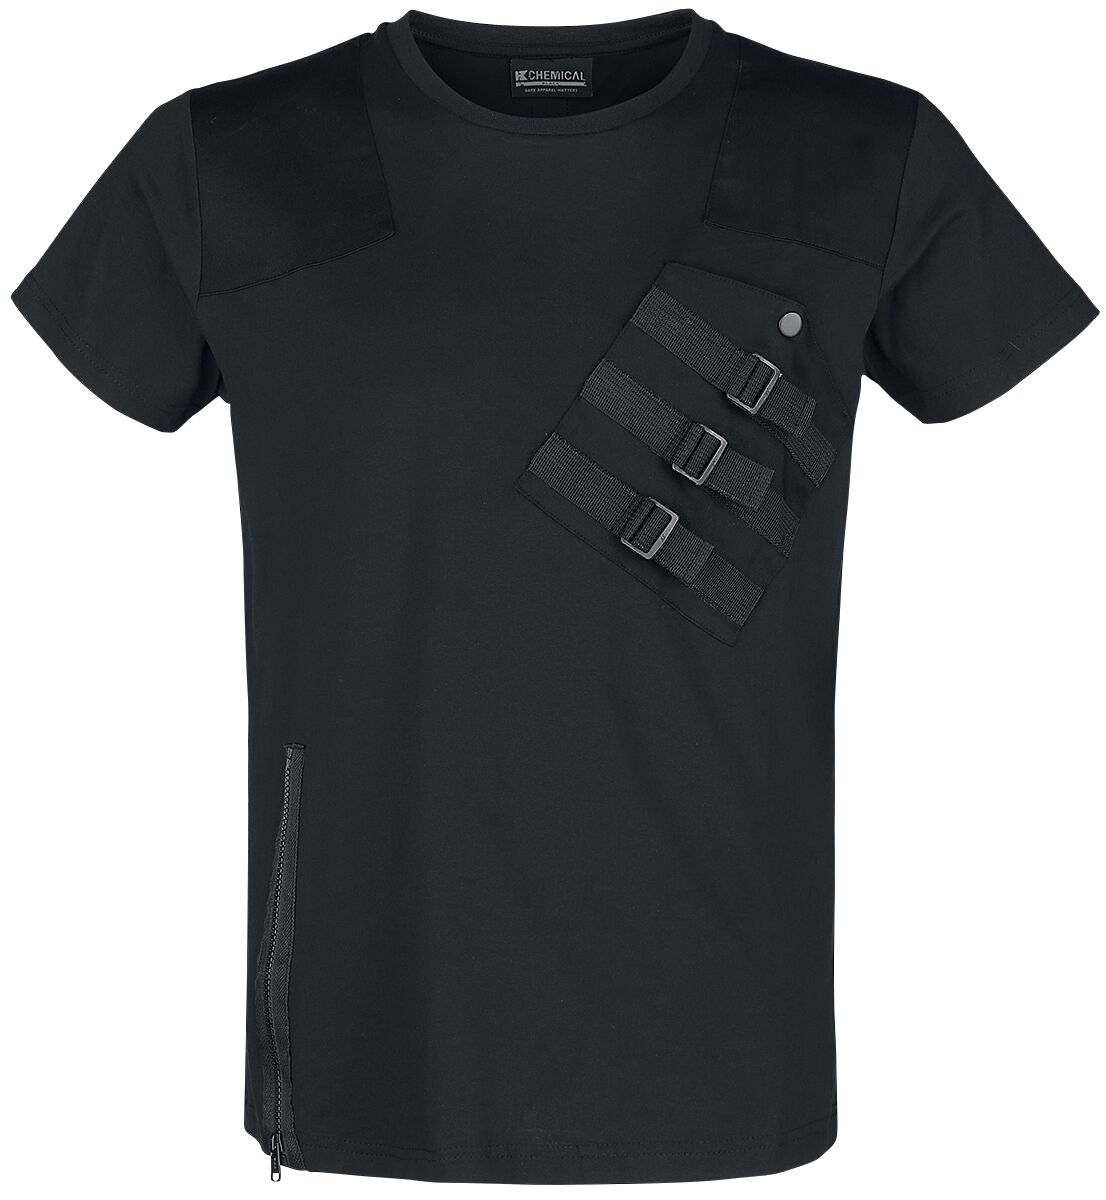 Chemical Black - Gothic T-Shirt - Cadet Top - S bis 3XL - für Männer - Größe S - schwarz